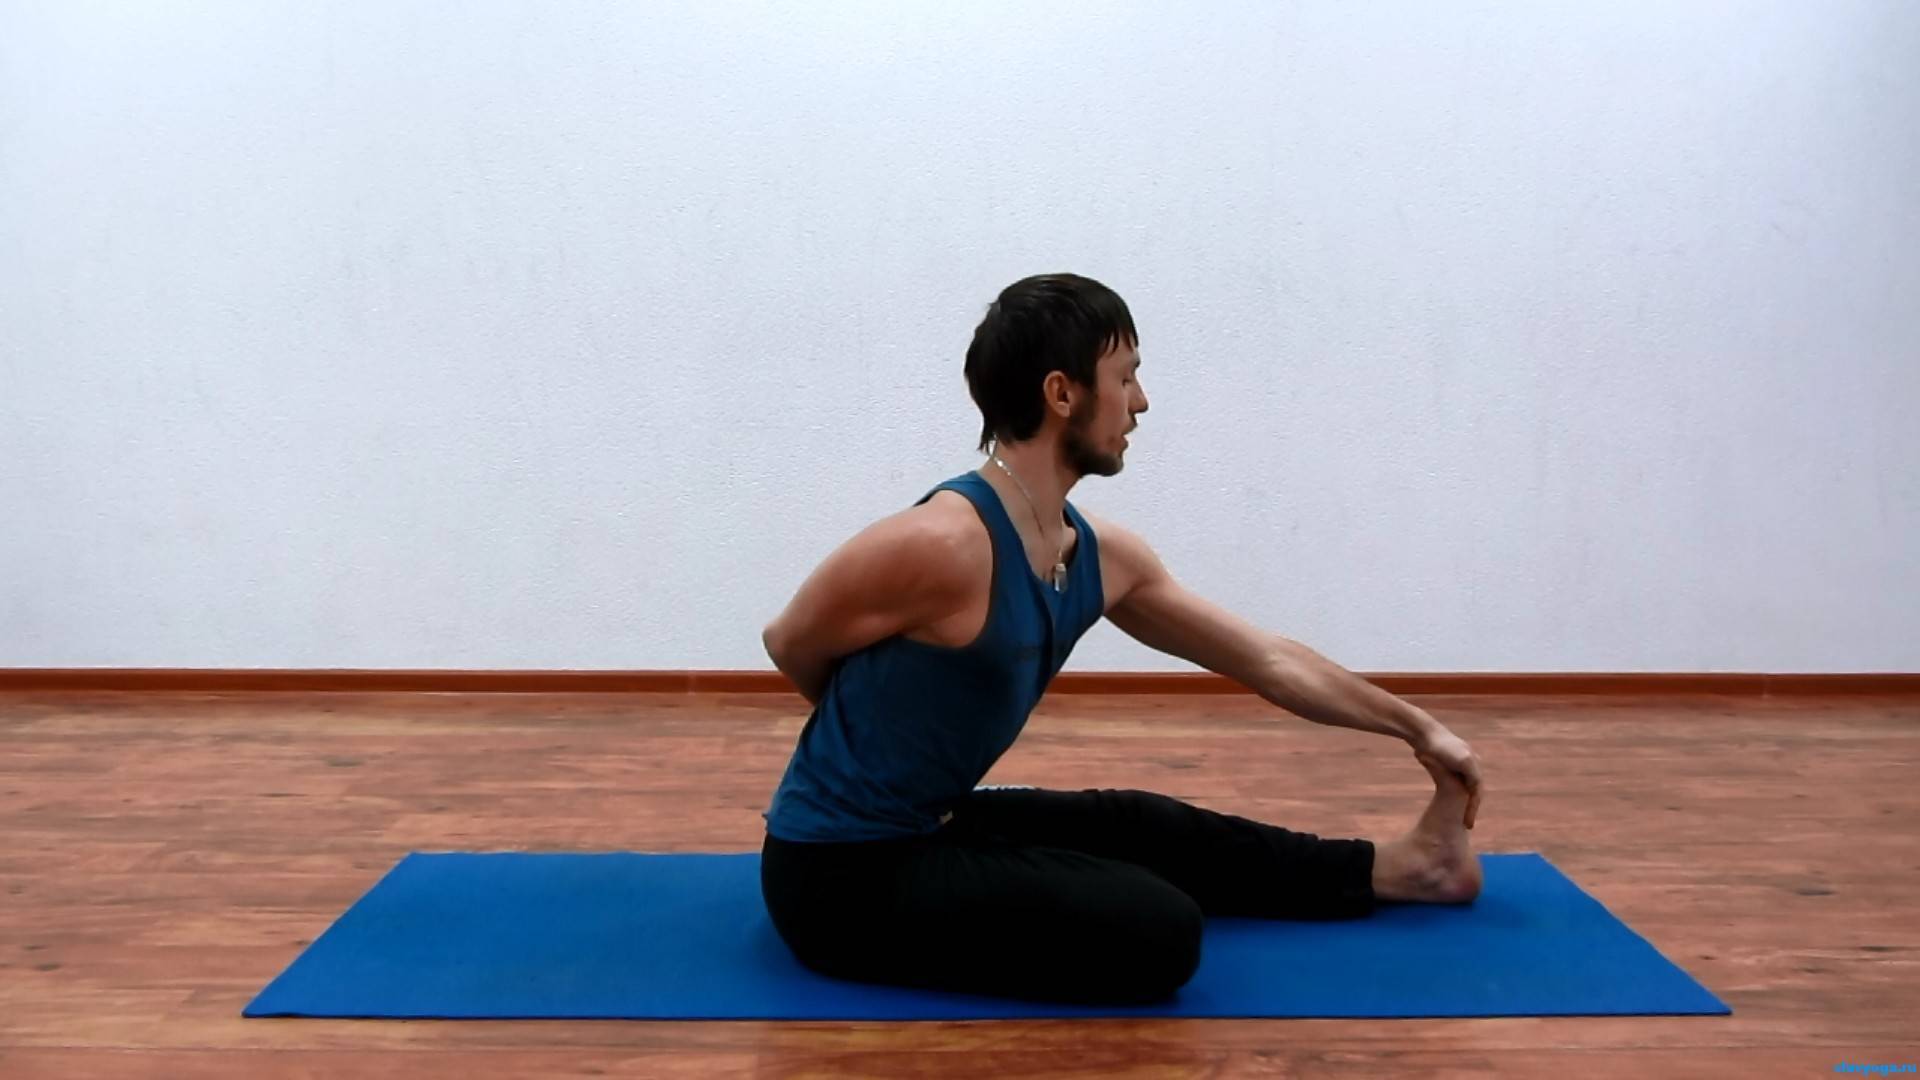 Йога для тазобедренных суставов при болях: раскрытие таза